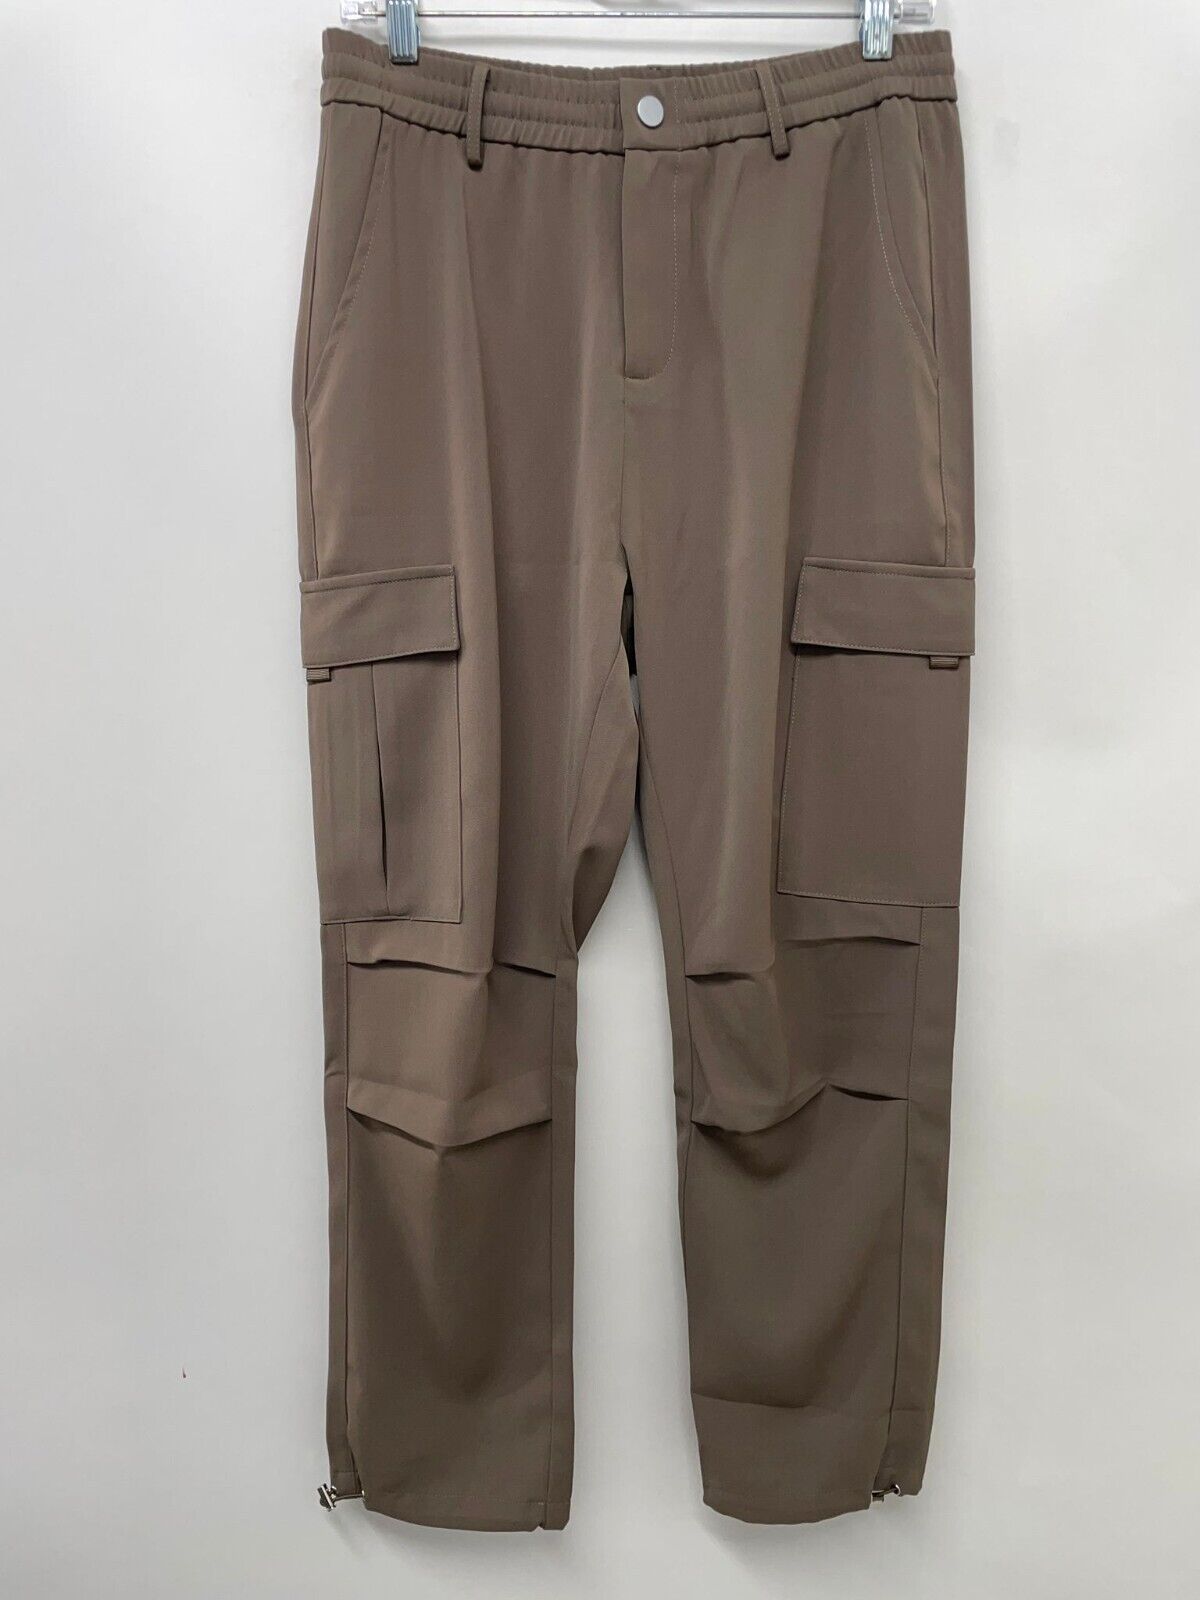 XXAN Studios Mens M Tokyo A:M Cargo 2.0 Pants Brown Asian Streetwear Pockets